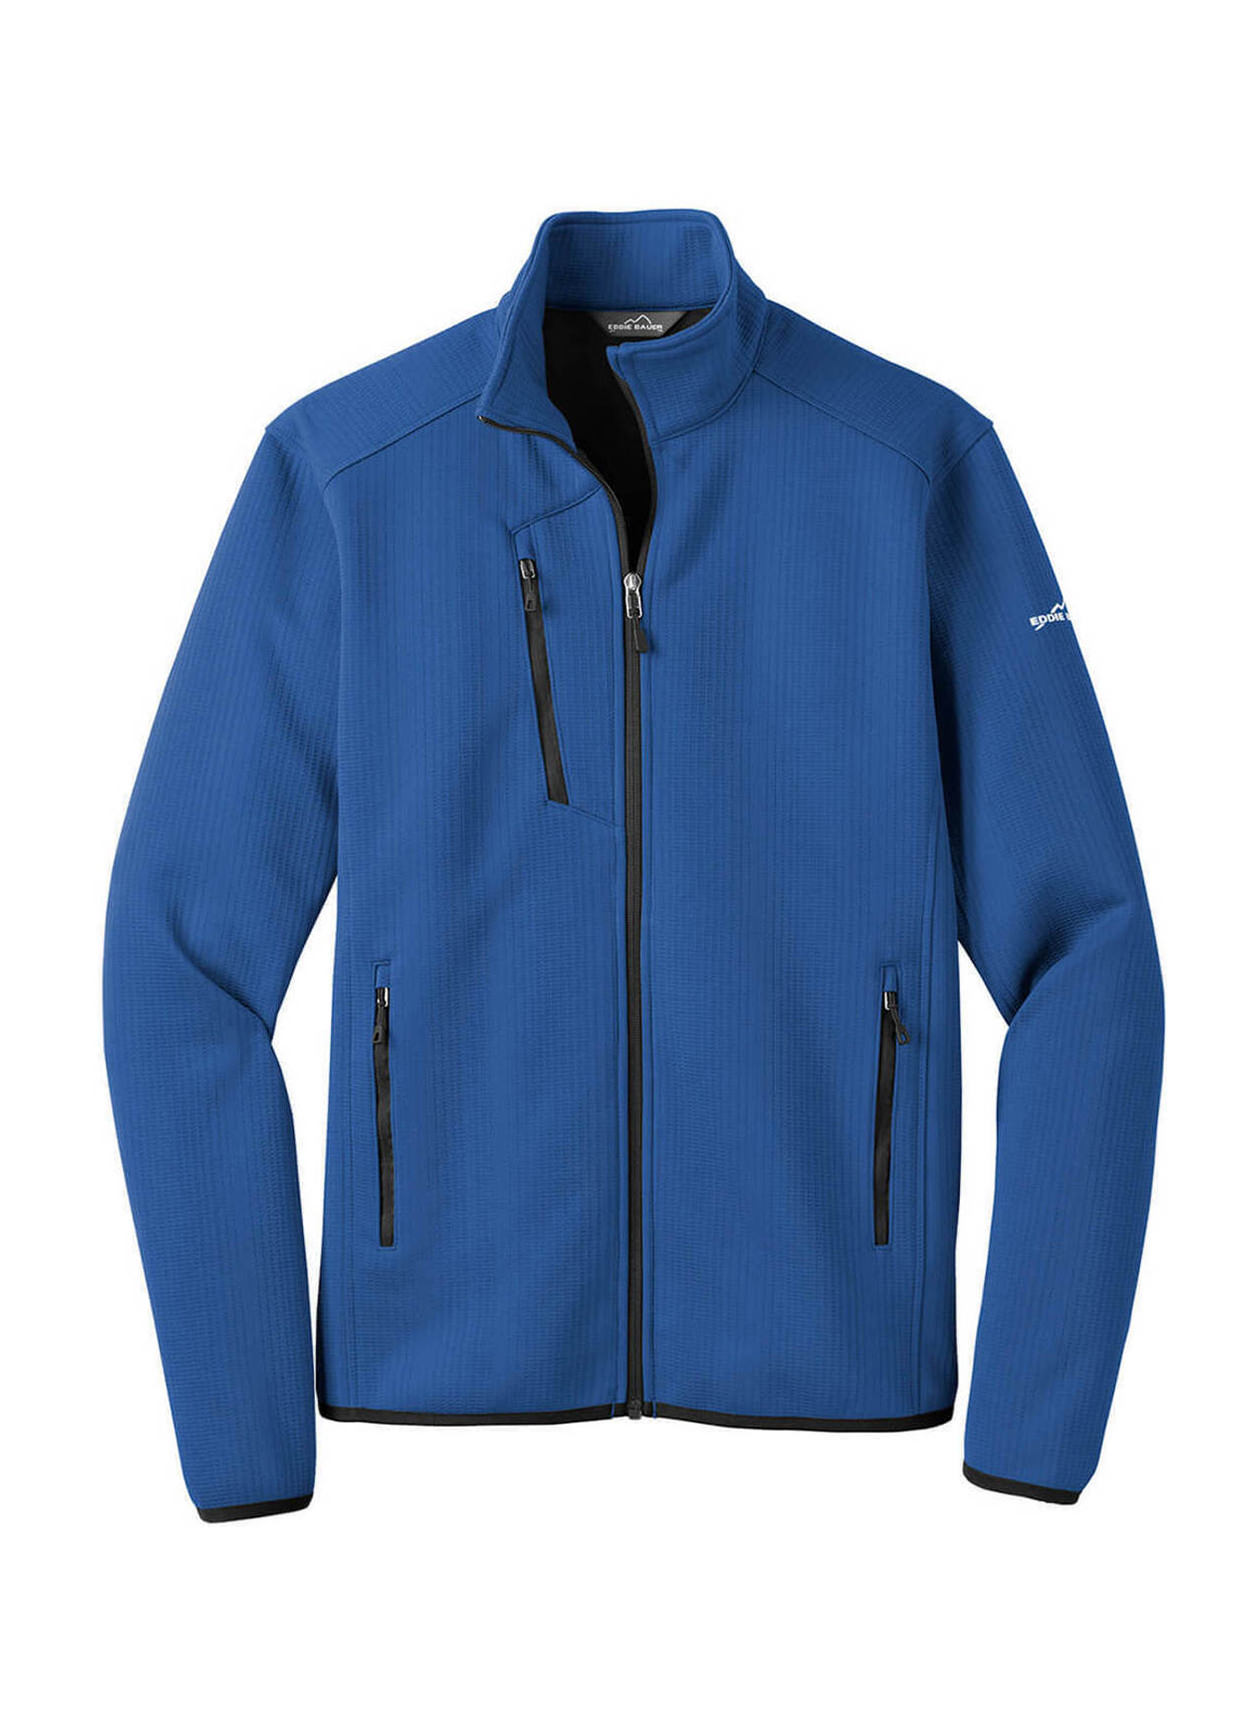 Men's Eddie Bauer Fleece Jacket (RCG3822)